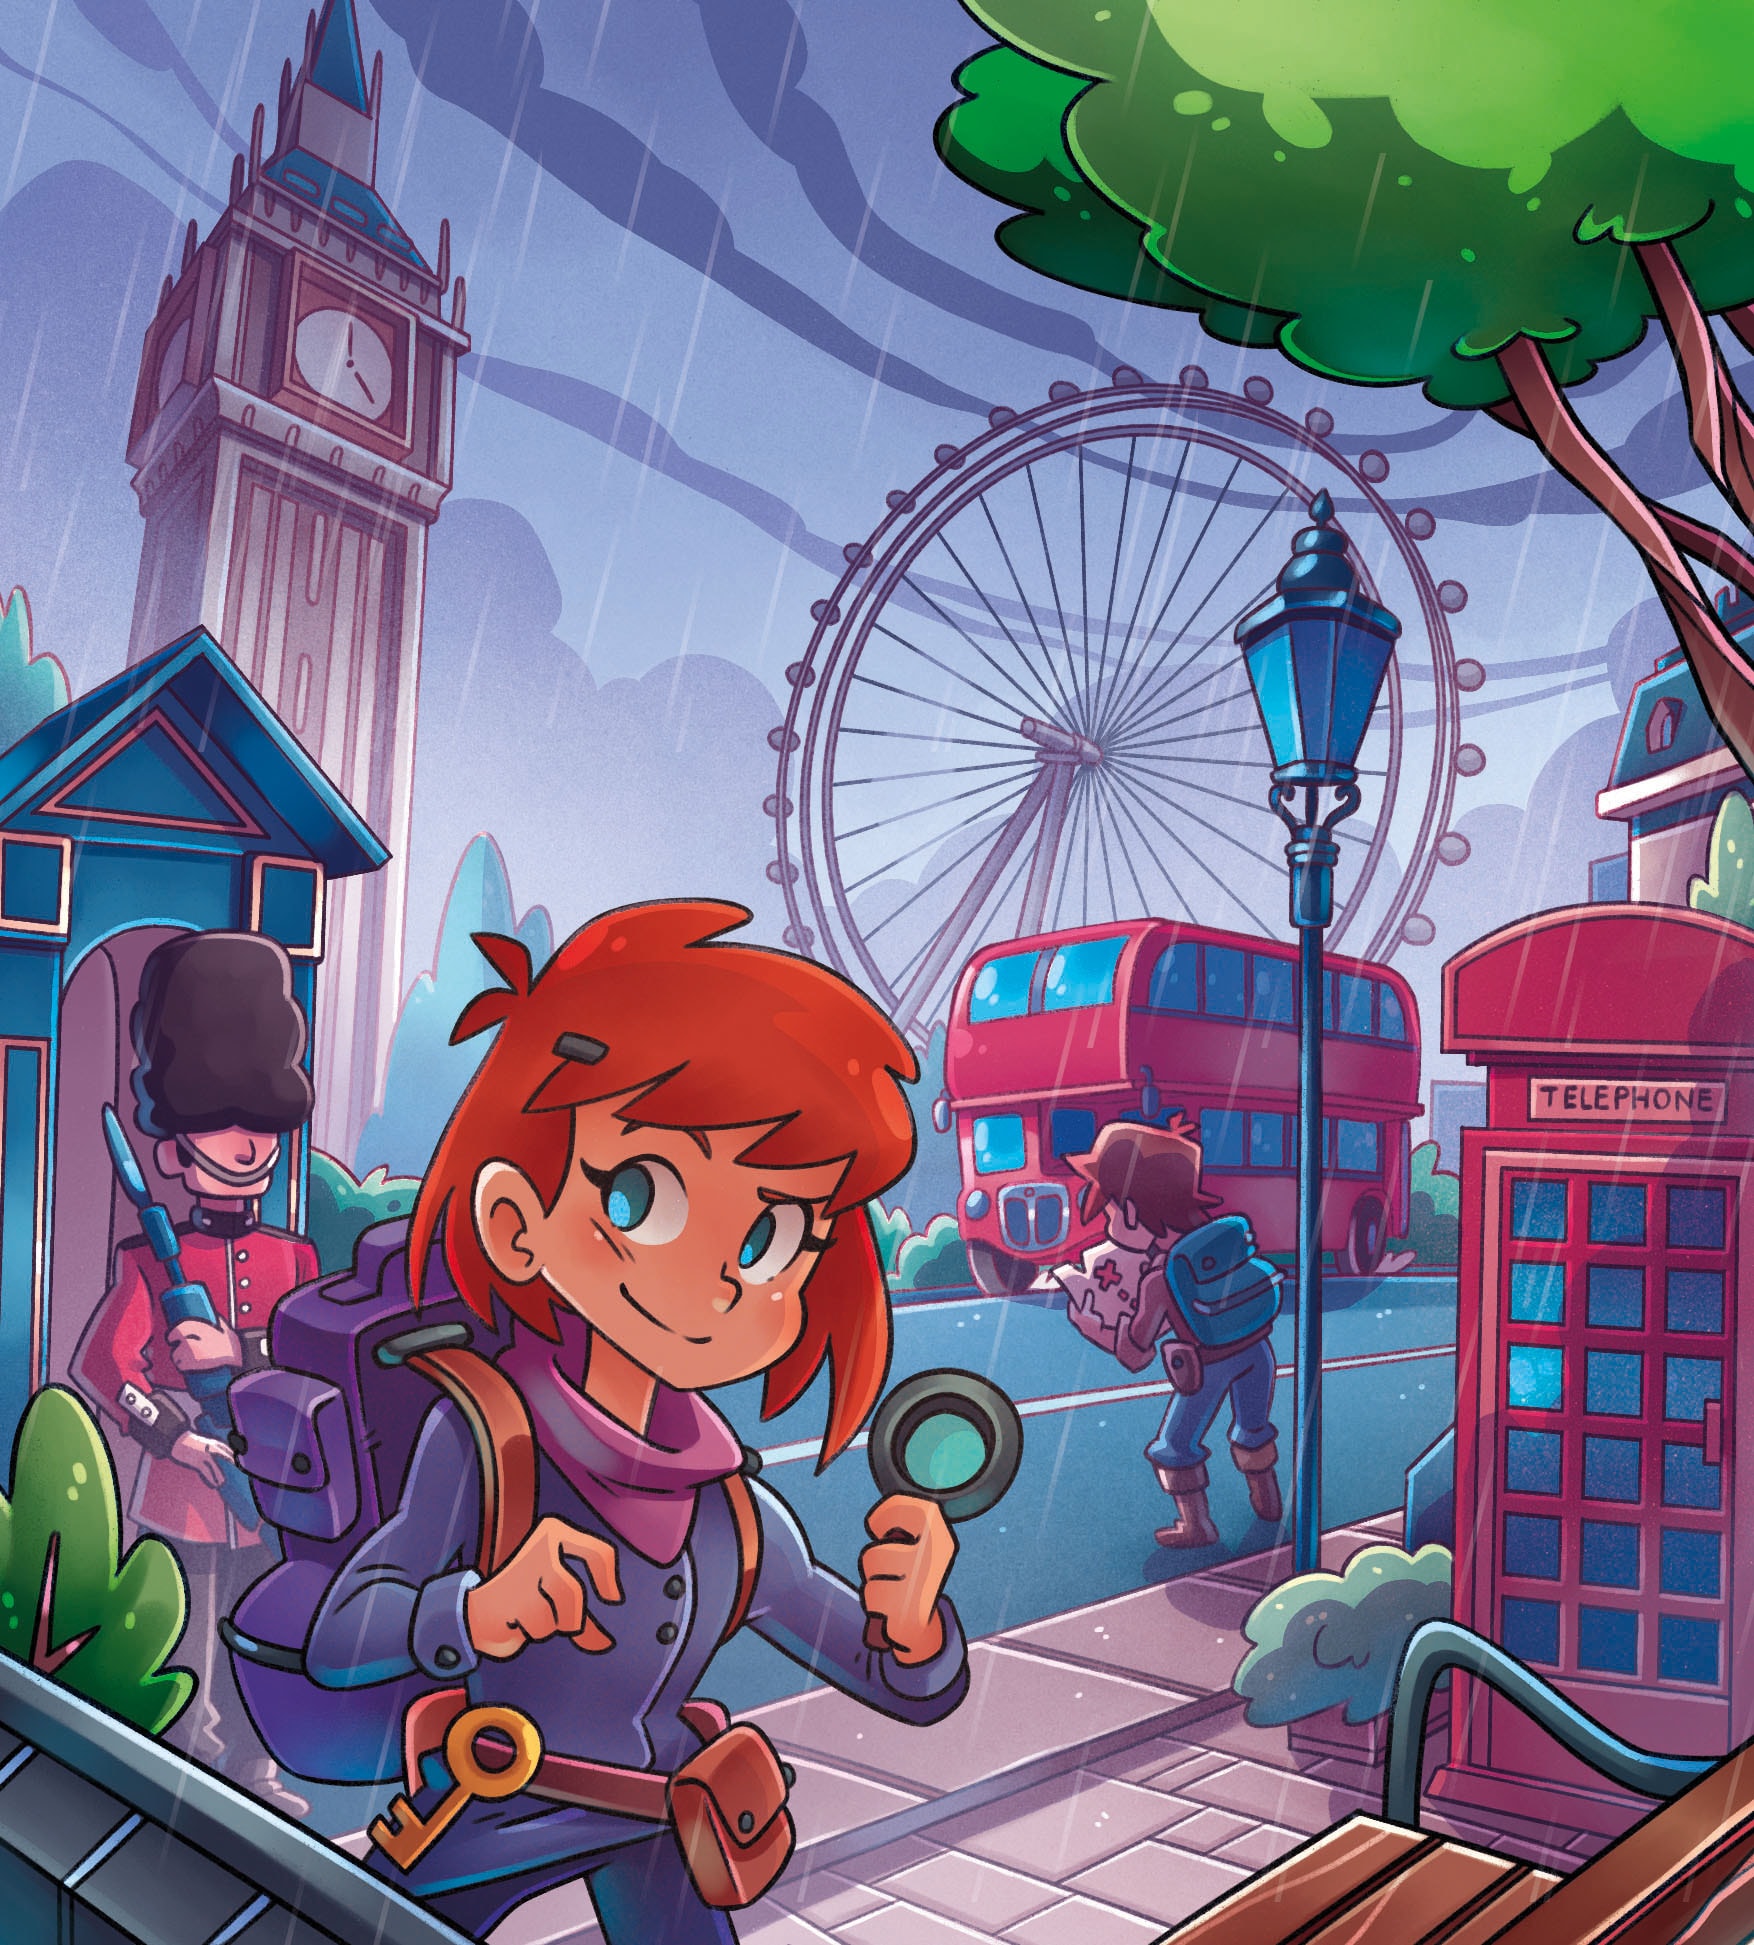 Clementoni® Spiel »Galileo, Escape Game Abenteuer in London«, Made in Europe, FSC® - schützt Wald - weltweit